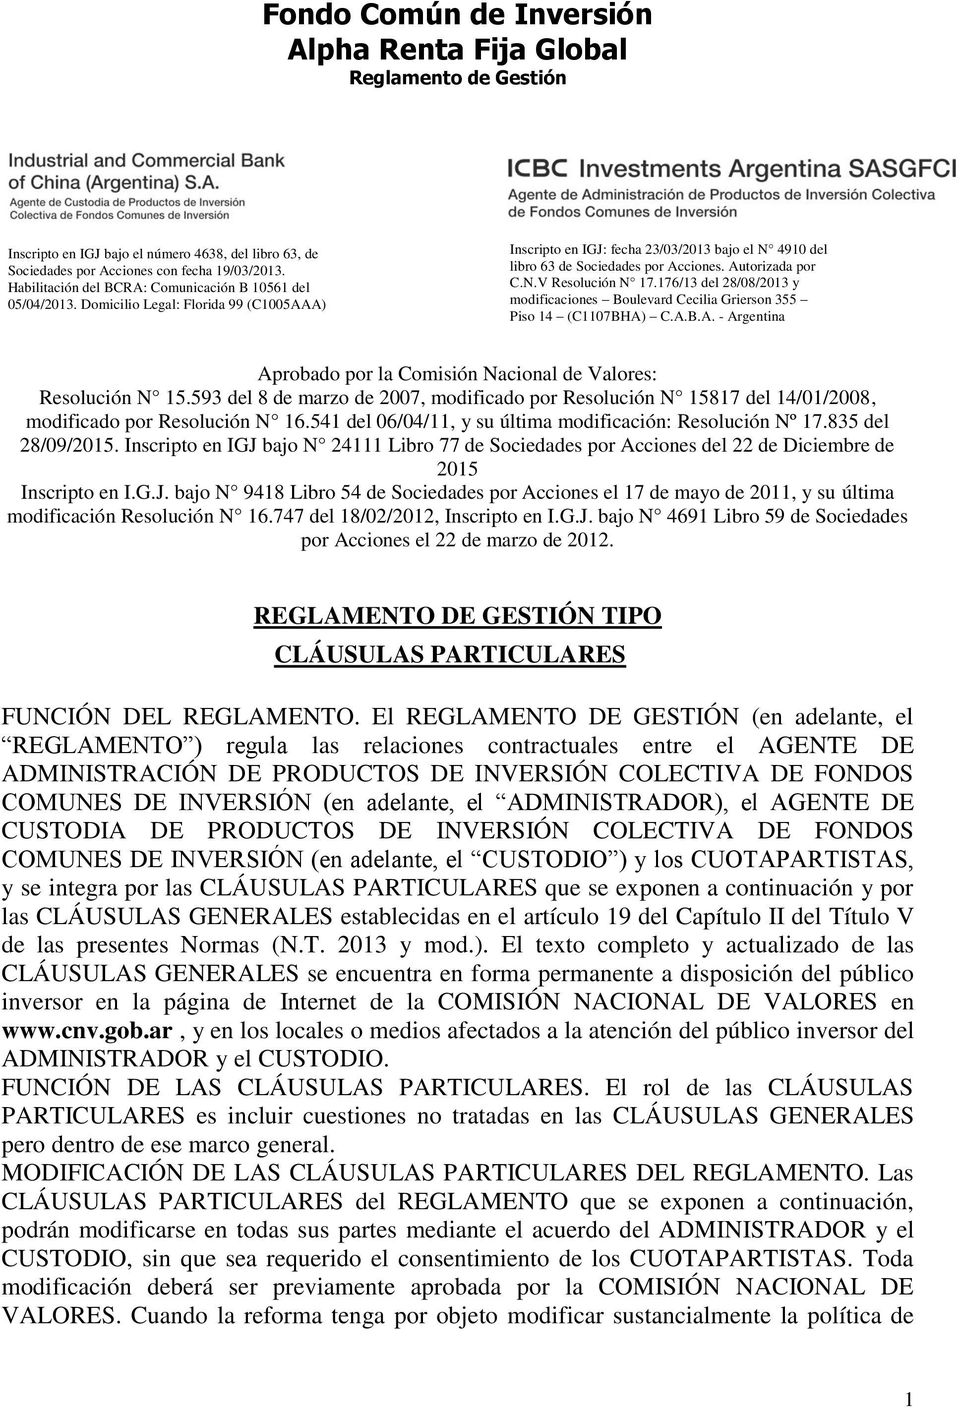 Autorizada por C.N.V Resolución N 17.176/13 del 28/08/2013 y modificaciones Boulevard Cecilia Grierson 355 Piso 14 (C1107BHA) C.A.B.A. - Argentina Aprobado por la Comisión Nacional de Valores: Resolución N 15.